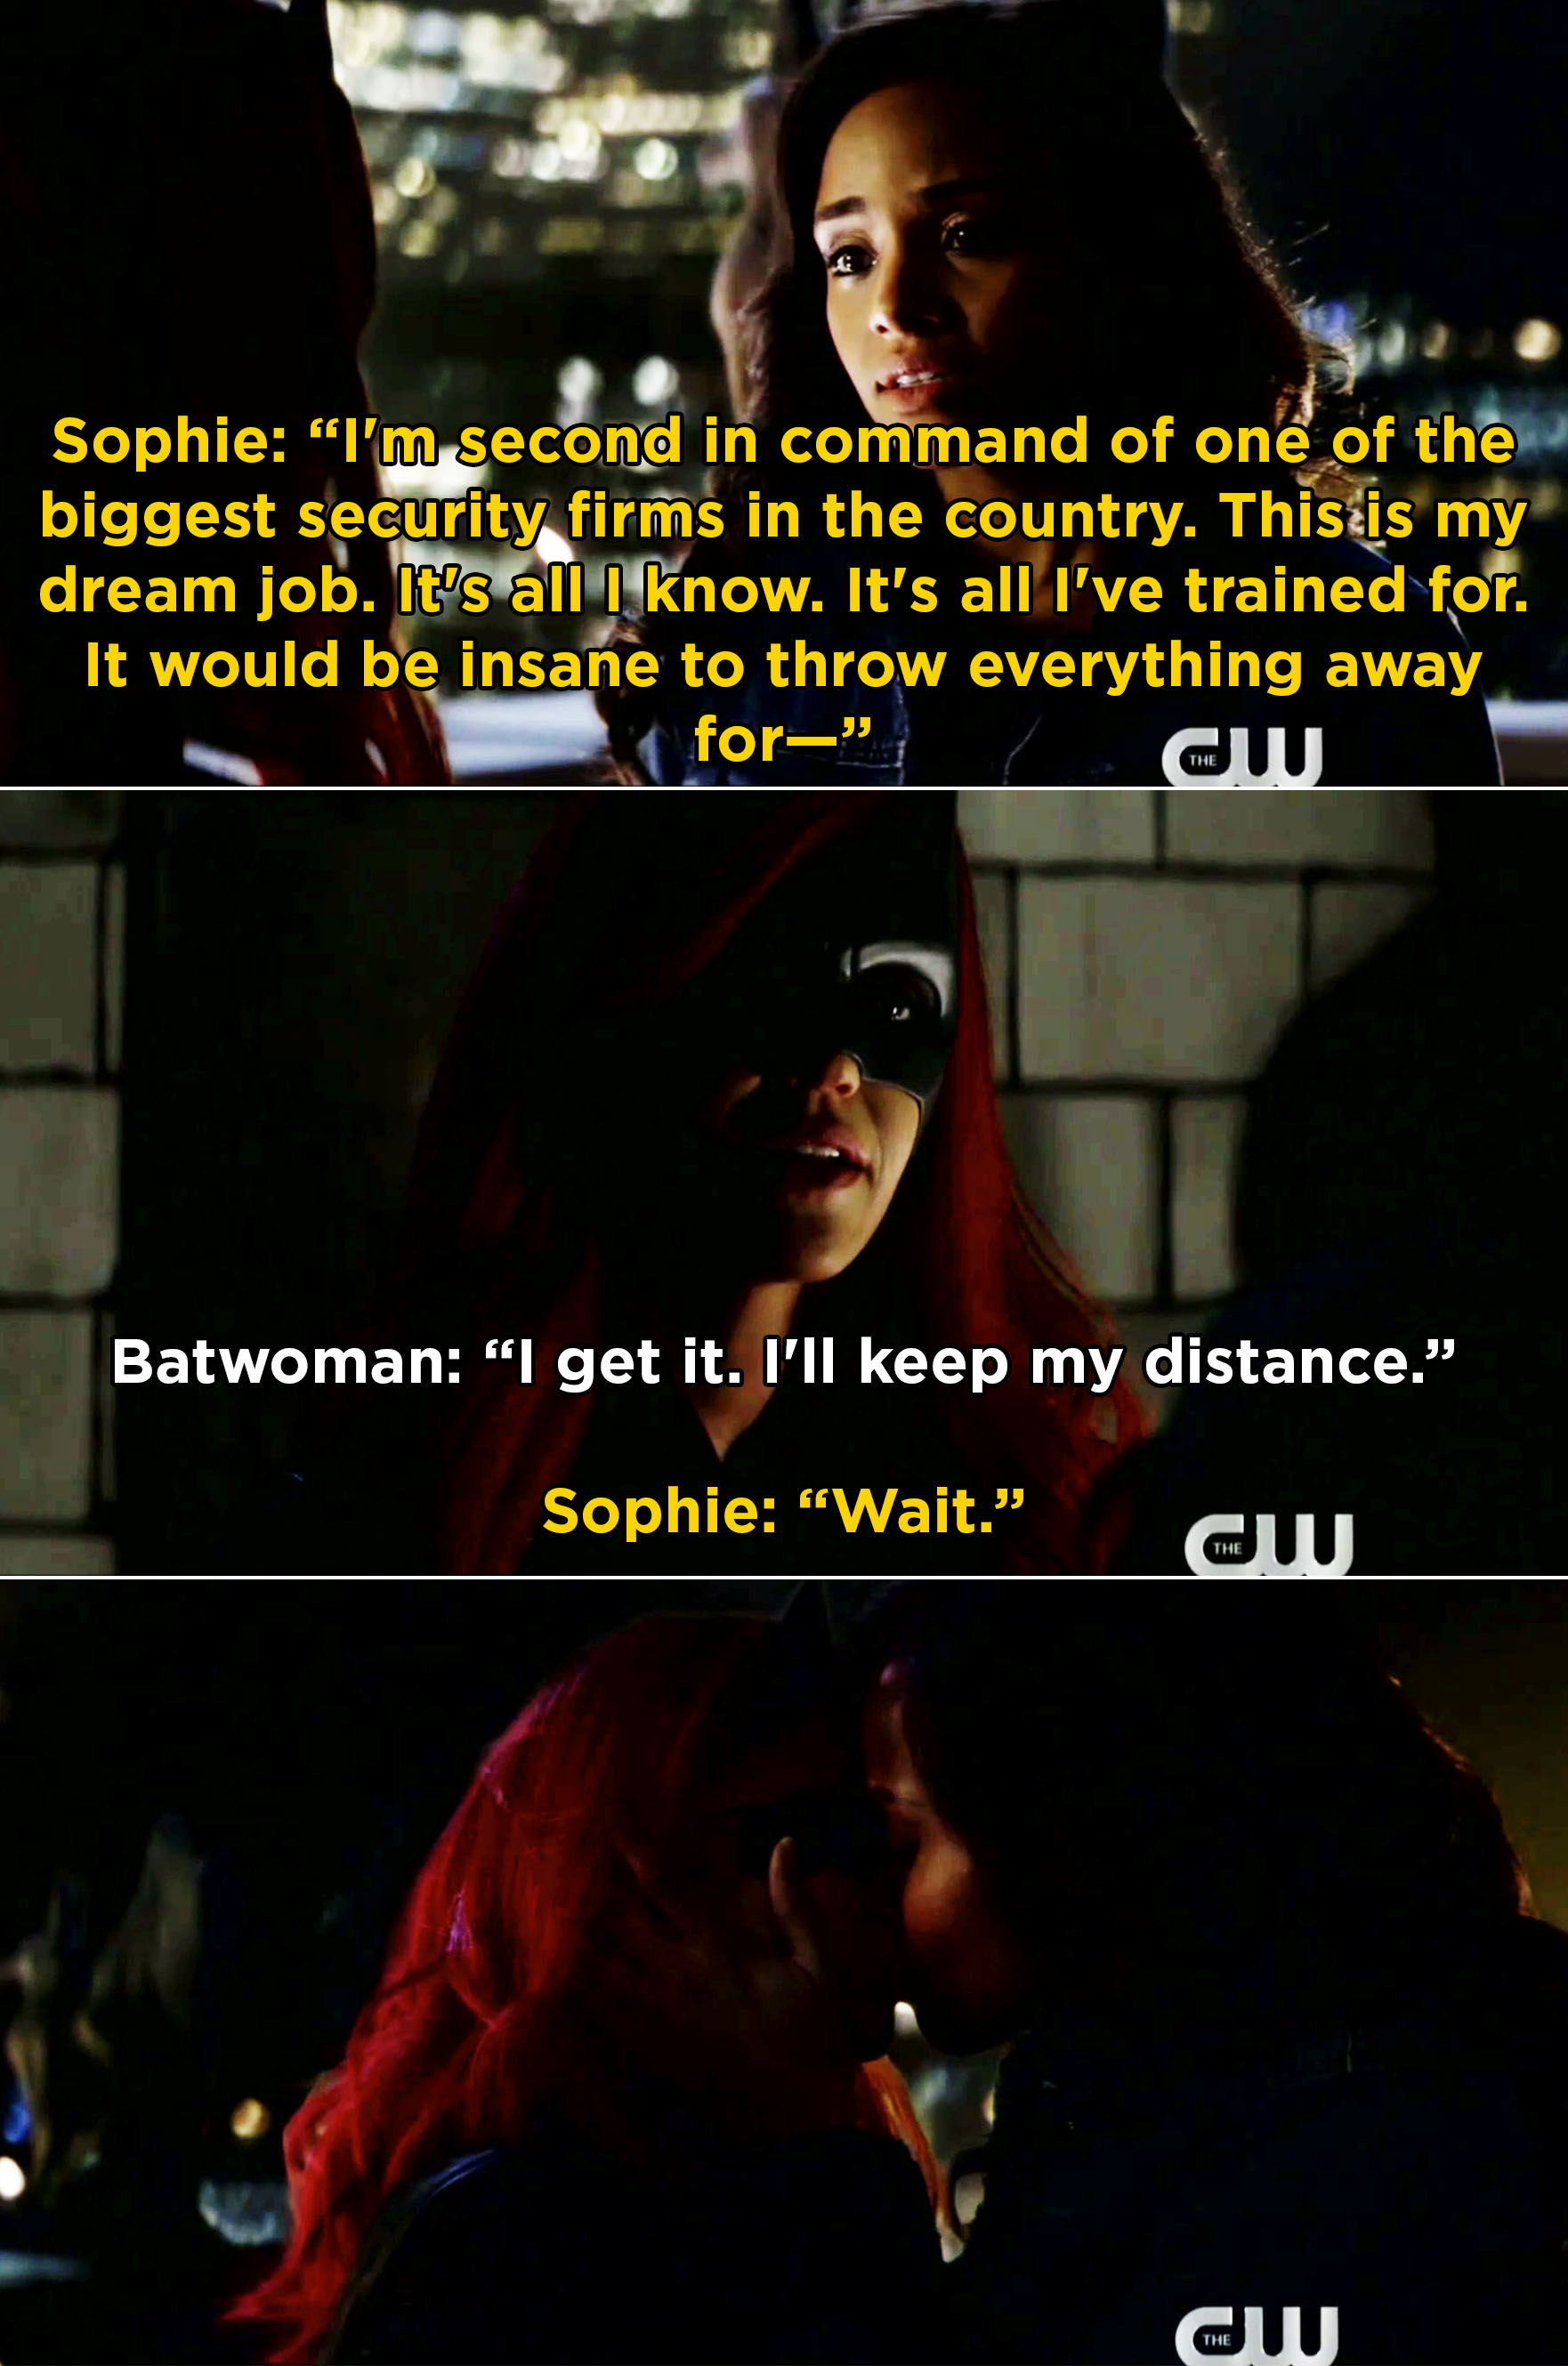 索菲告诉Batwoman,她爱她的工作,但她会扔掉它了凯特,然后两人接吻